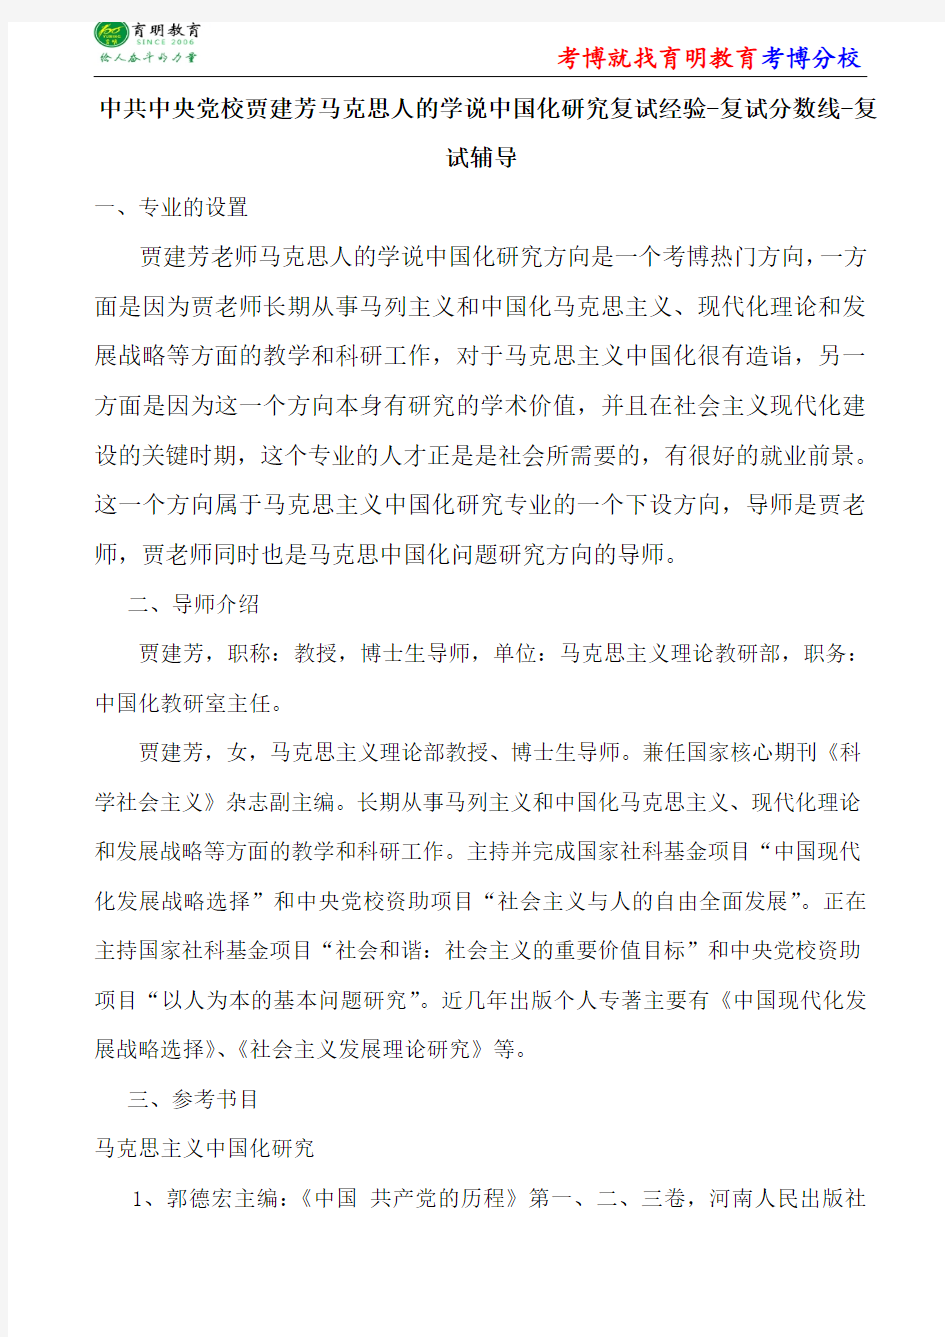 中共中央党校马克思主义中国化贾建芳马克思人的学说中国化研究复试经验-复试分数线-复试辅导